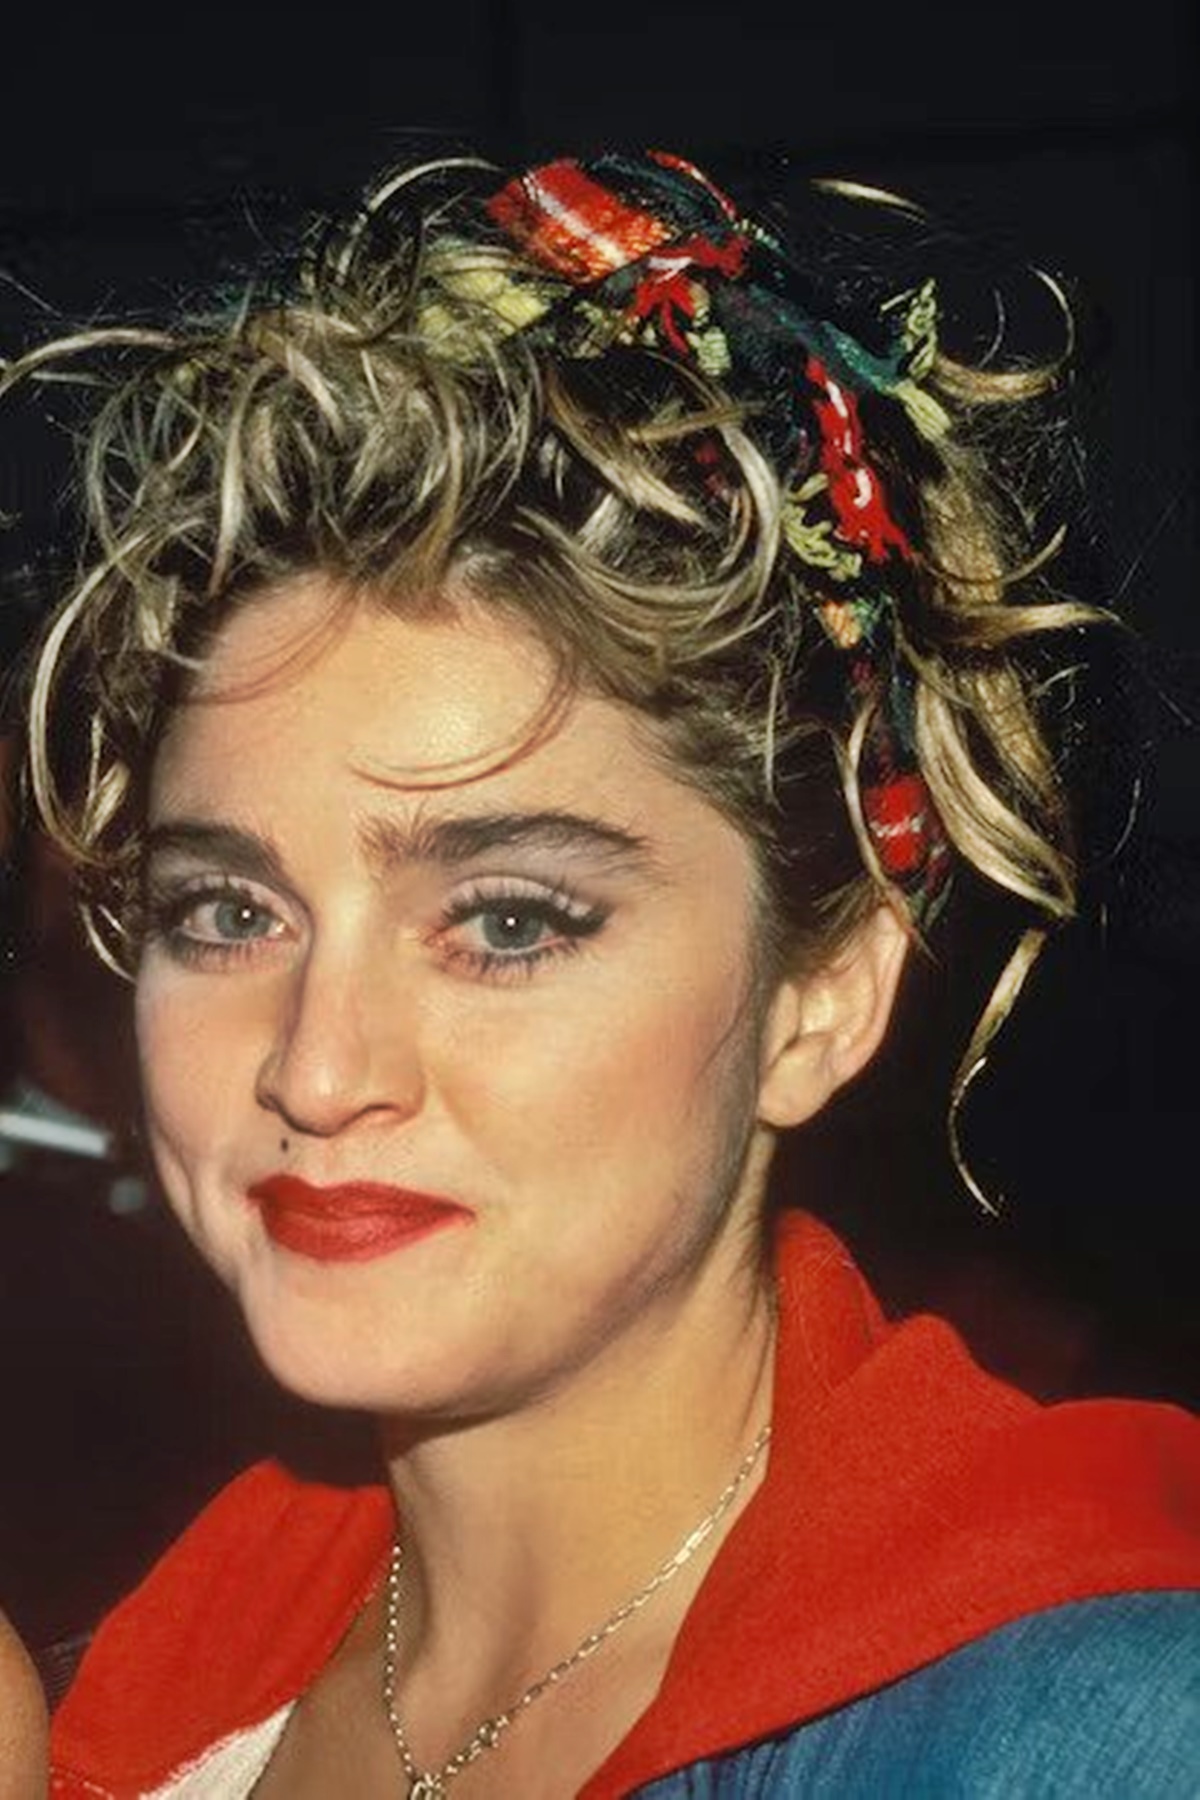 Rá sem ismerni, hogyan nézett ki Madonna a plasztikai műtétek előtt